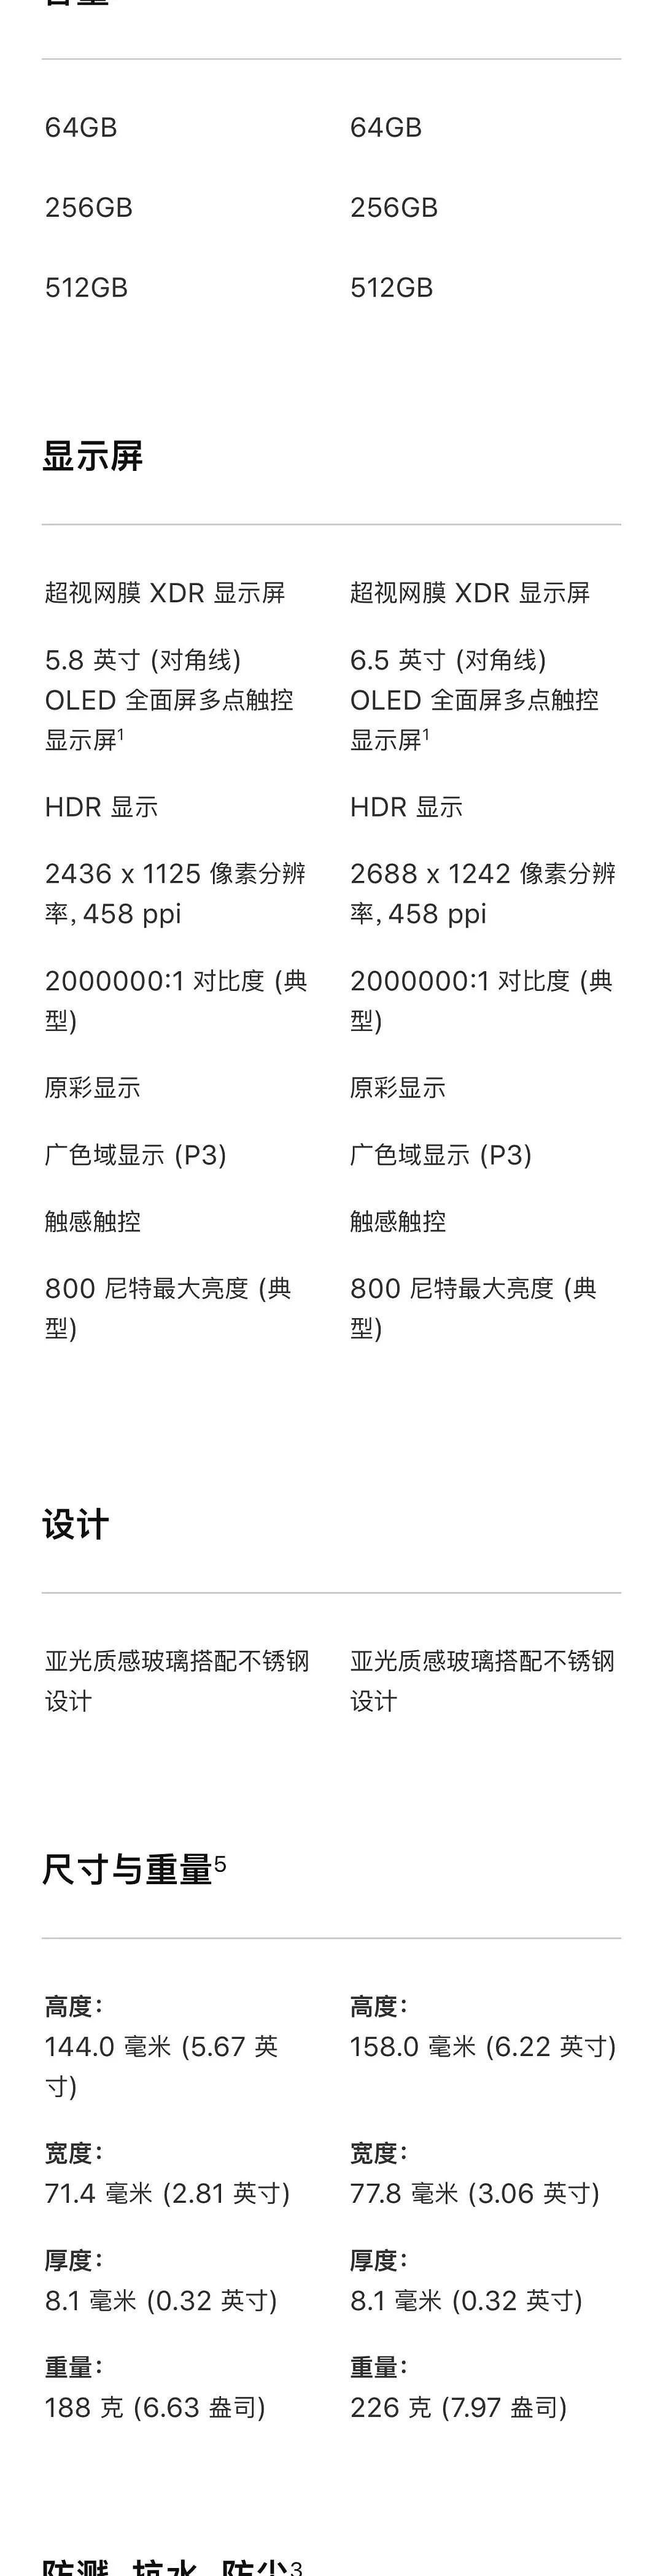 一张图看iPhone 11 Pro和iPhone 11 Pro Max详细规格对比，差价900元差在哪里？ - 2